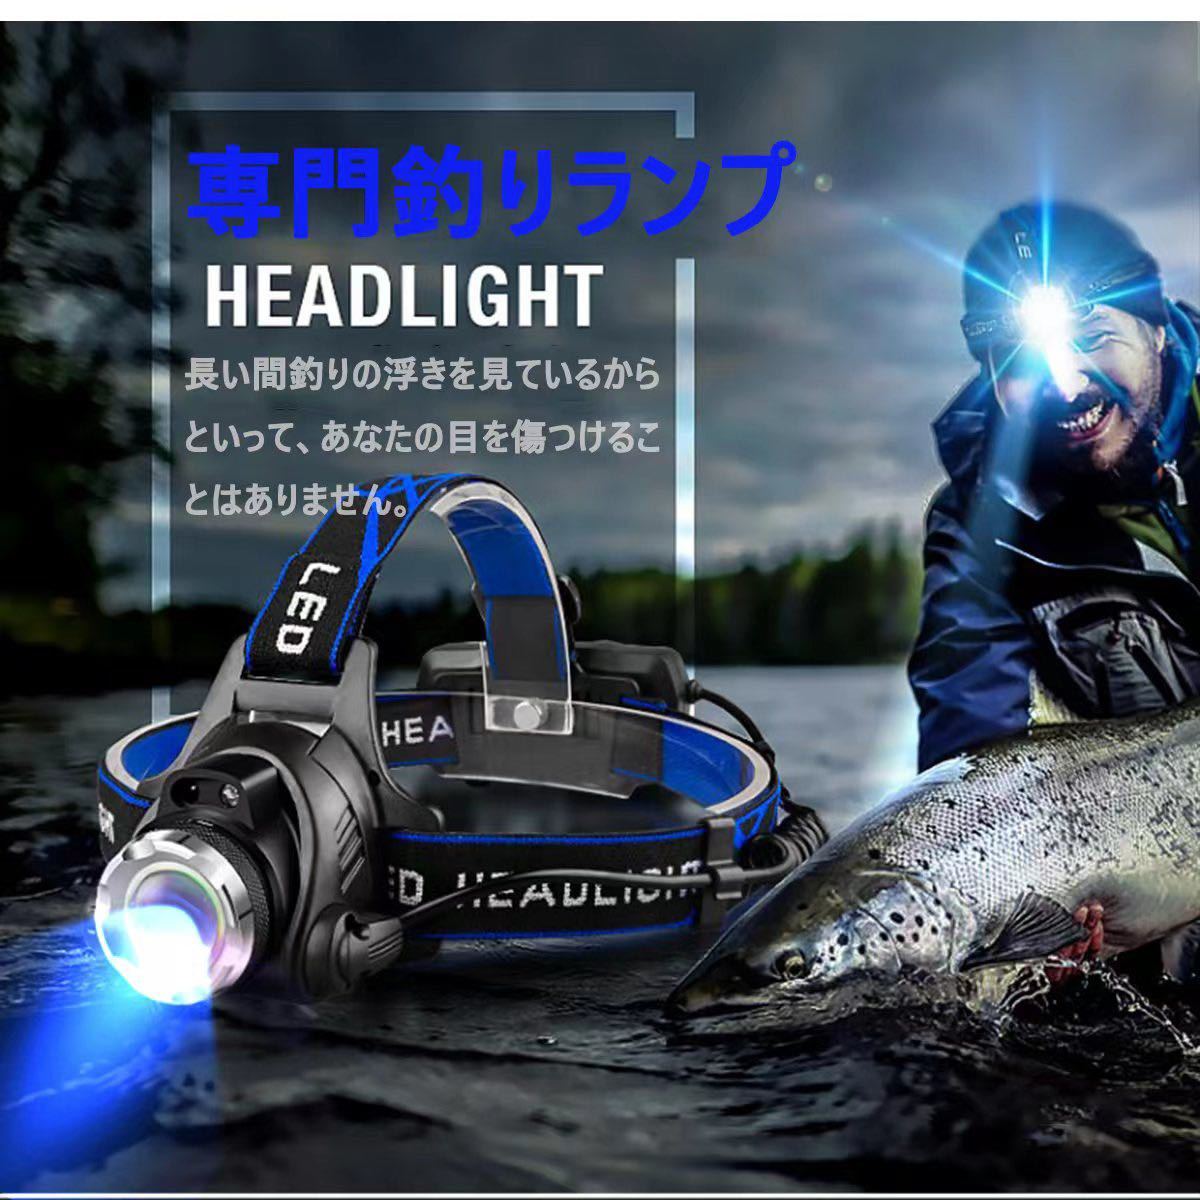 LEDヘッドライト センサー USB充電式 4モード 高輝度 明るい 作業用ライト 防水 作業 キャンプ 散歩 登山 